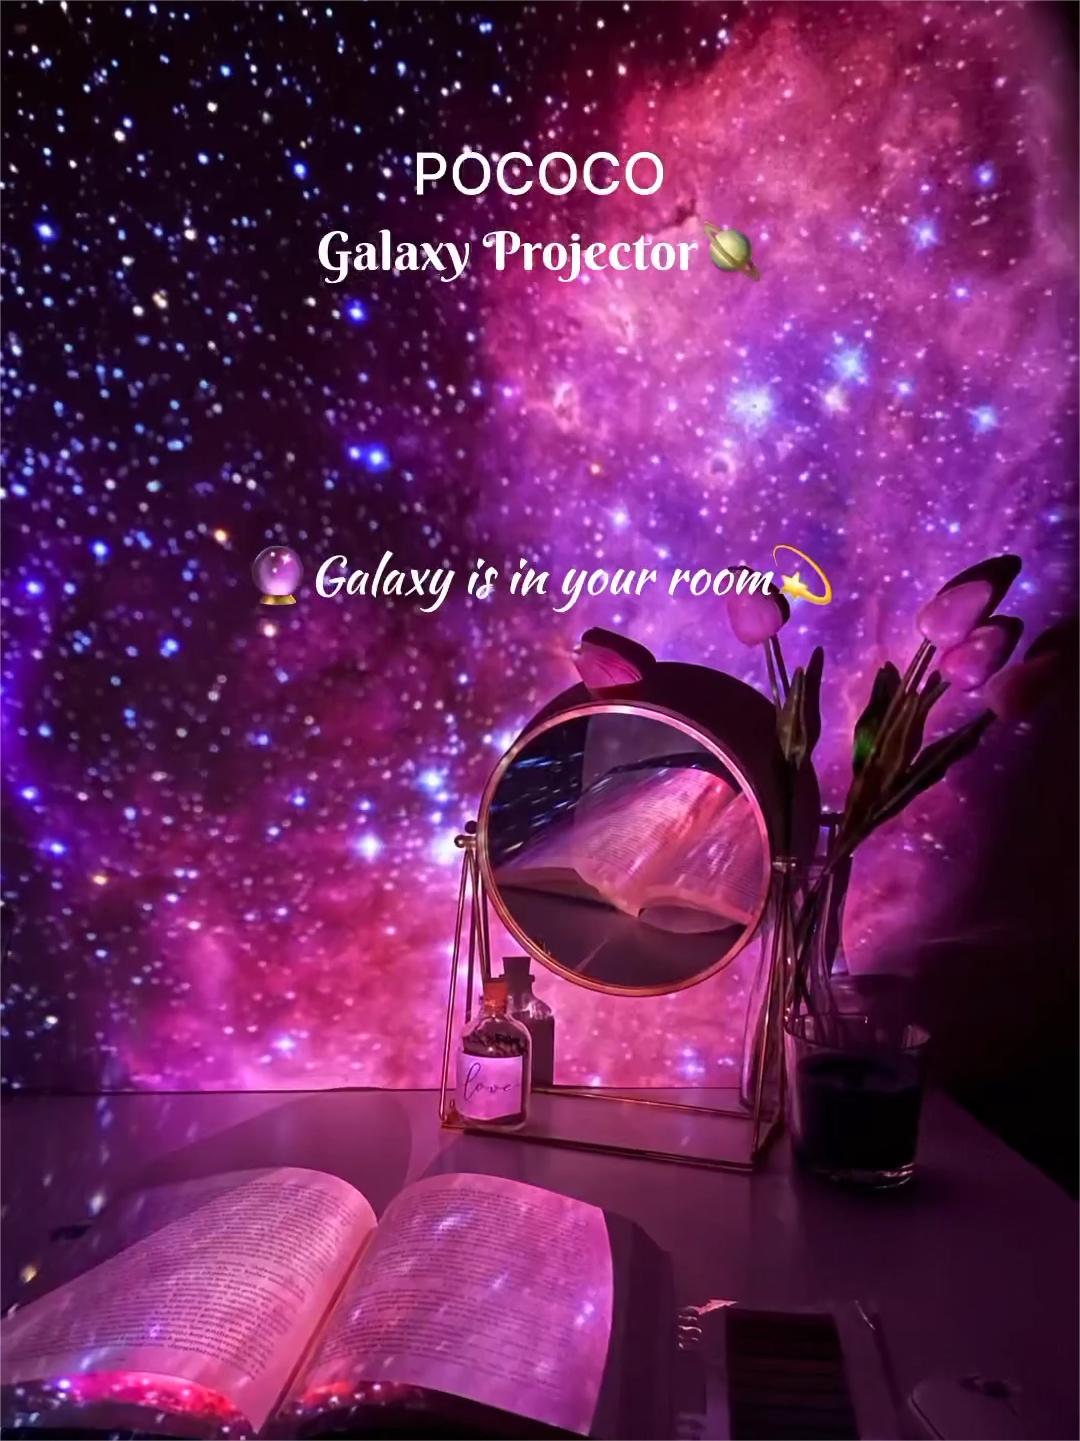 POCOCO Galaxy Projector in your room